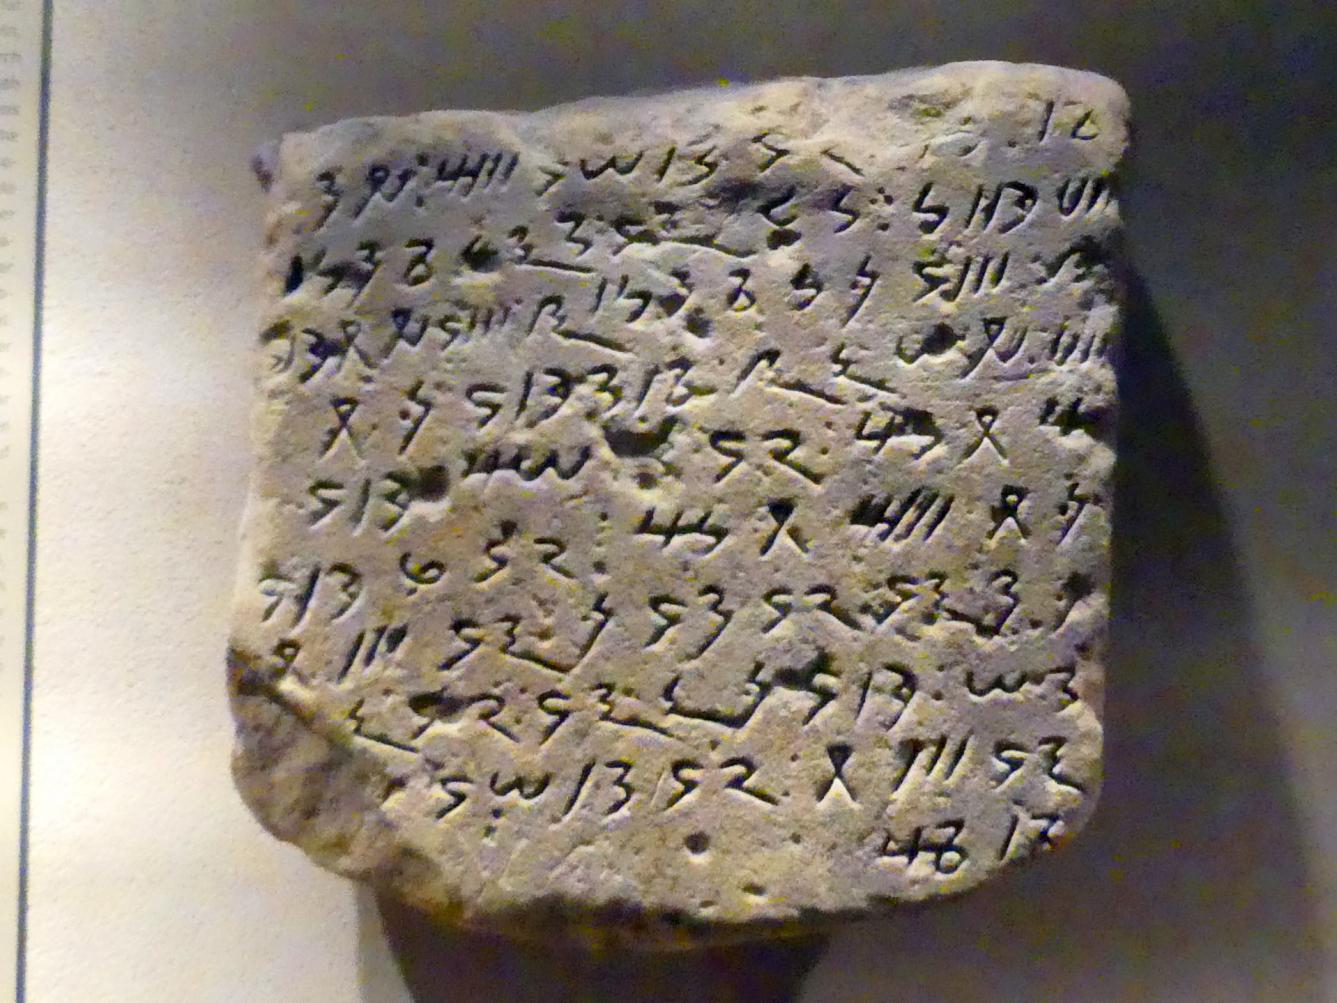 Block mit kursiv-meroitischer Inschrift, Meroitische Zeit, 200 v. Chr. - 500 n. Chr., 1 - 100, Bild 1/2